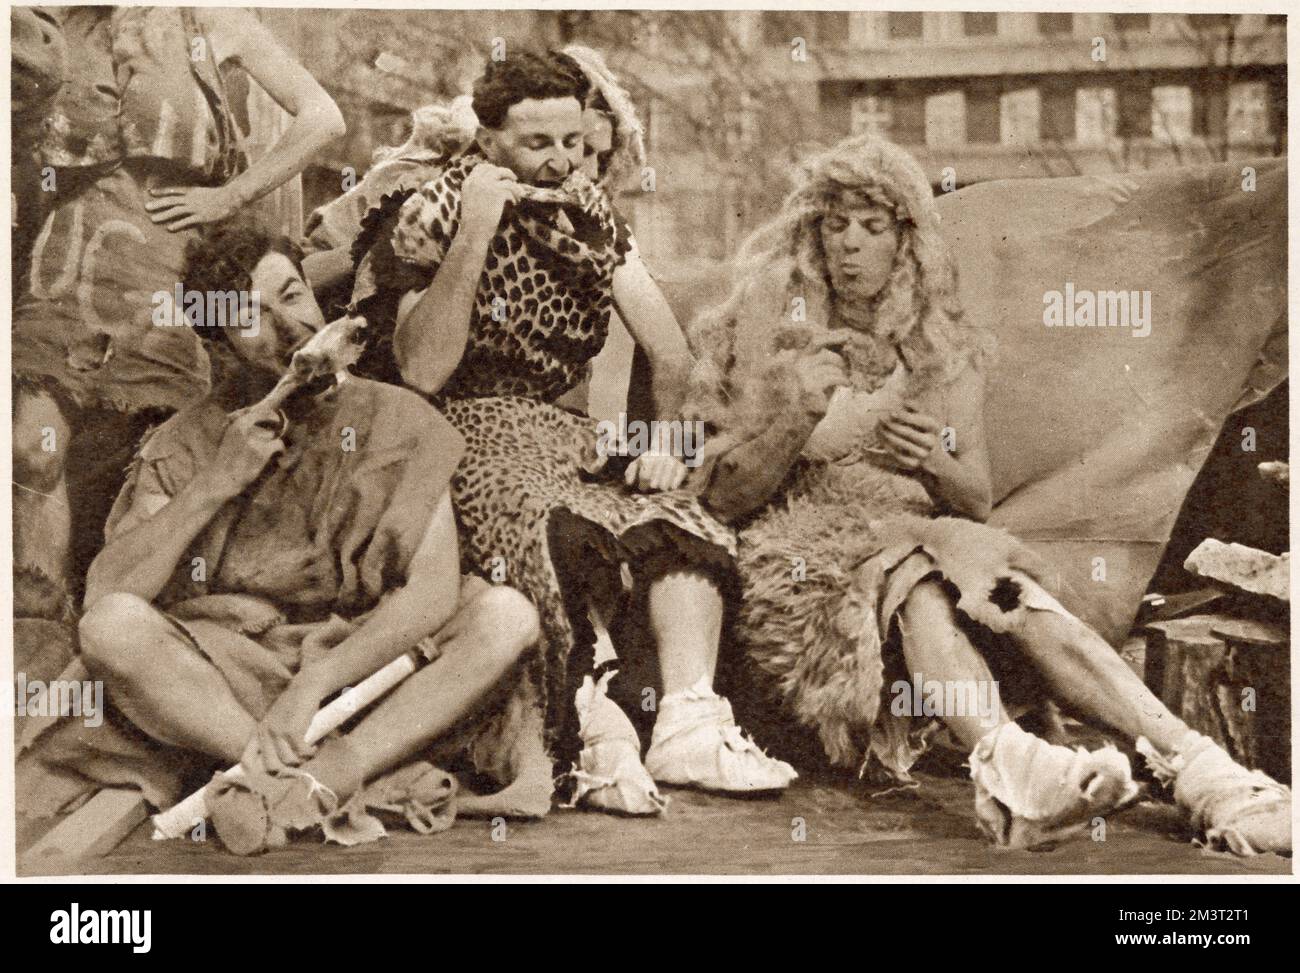 Mac Beardall, Doug Frazer und Dennis Wright verkleidet als "gesichtsbekleidete Wilde" nach der H-Bombe auf dem Westminster College-Floß bei einer Prozession Londoner Studenten, die der National Playing Fields Association helfen. Das Thema der gesamten Veranstaltung war 1950-2000. Stockfoto